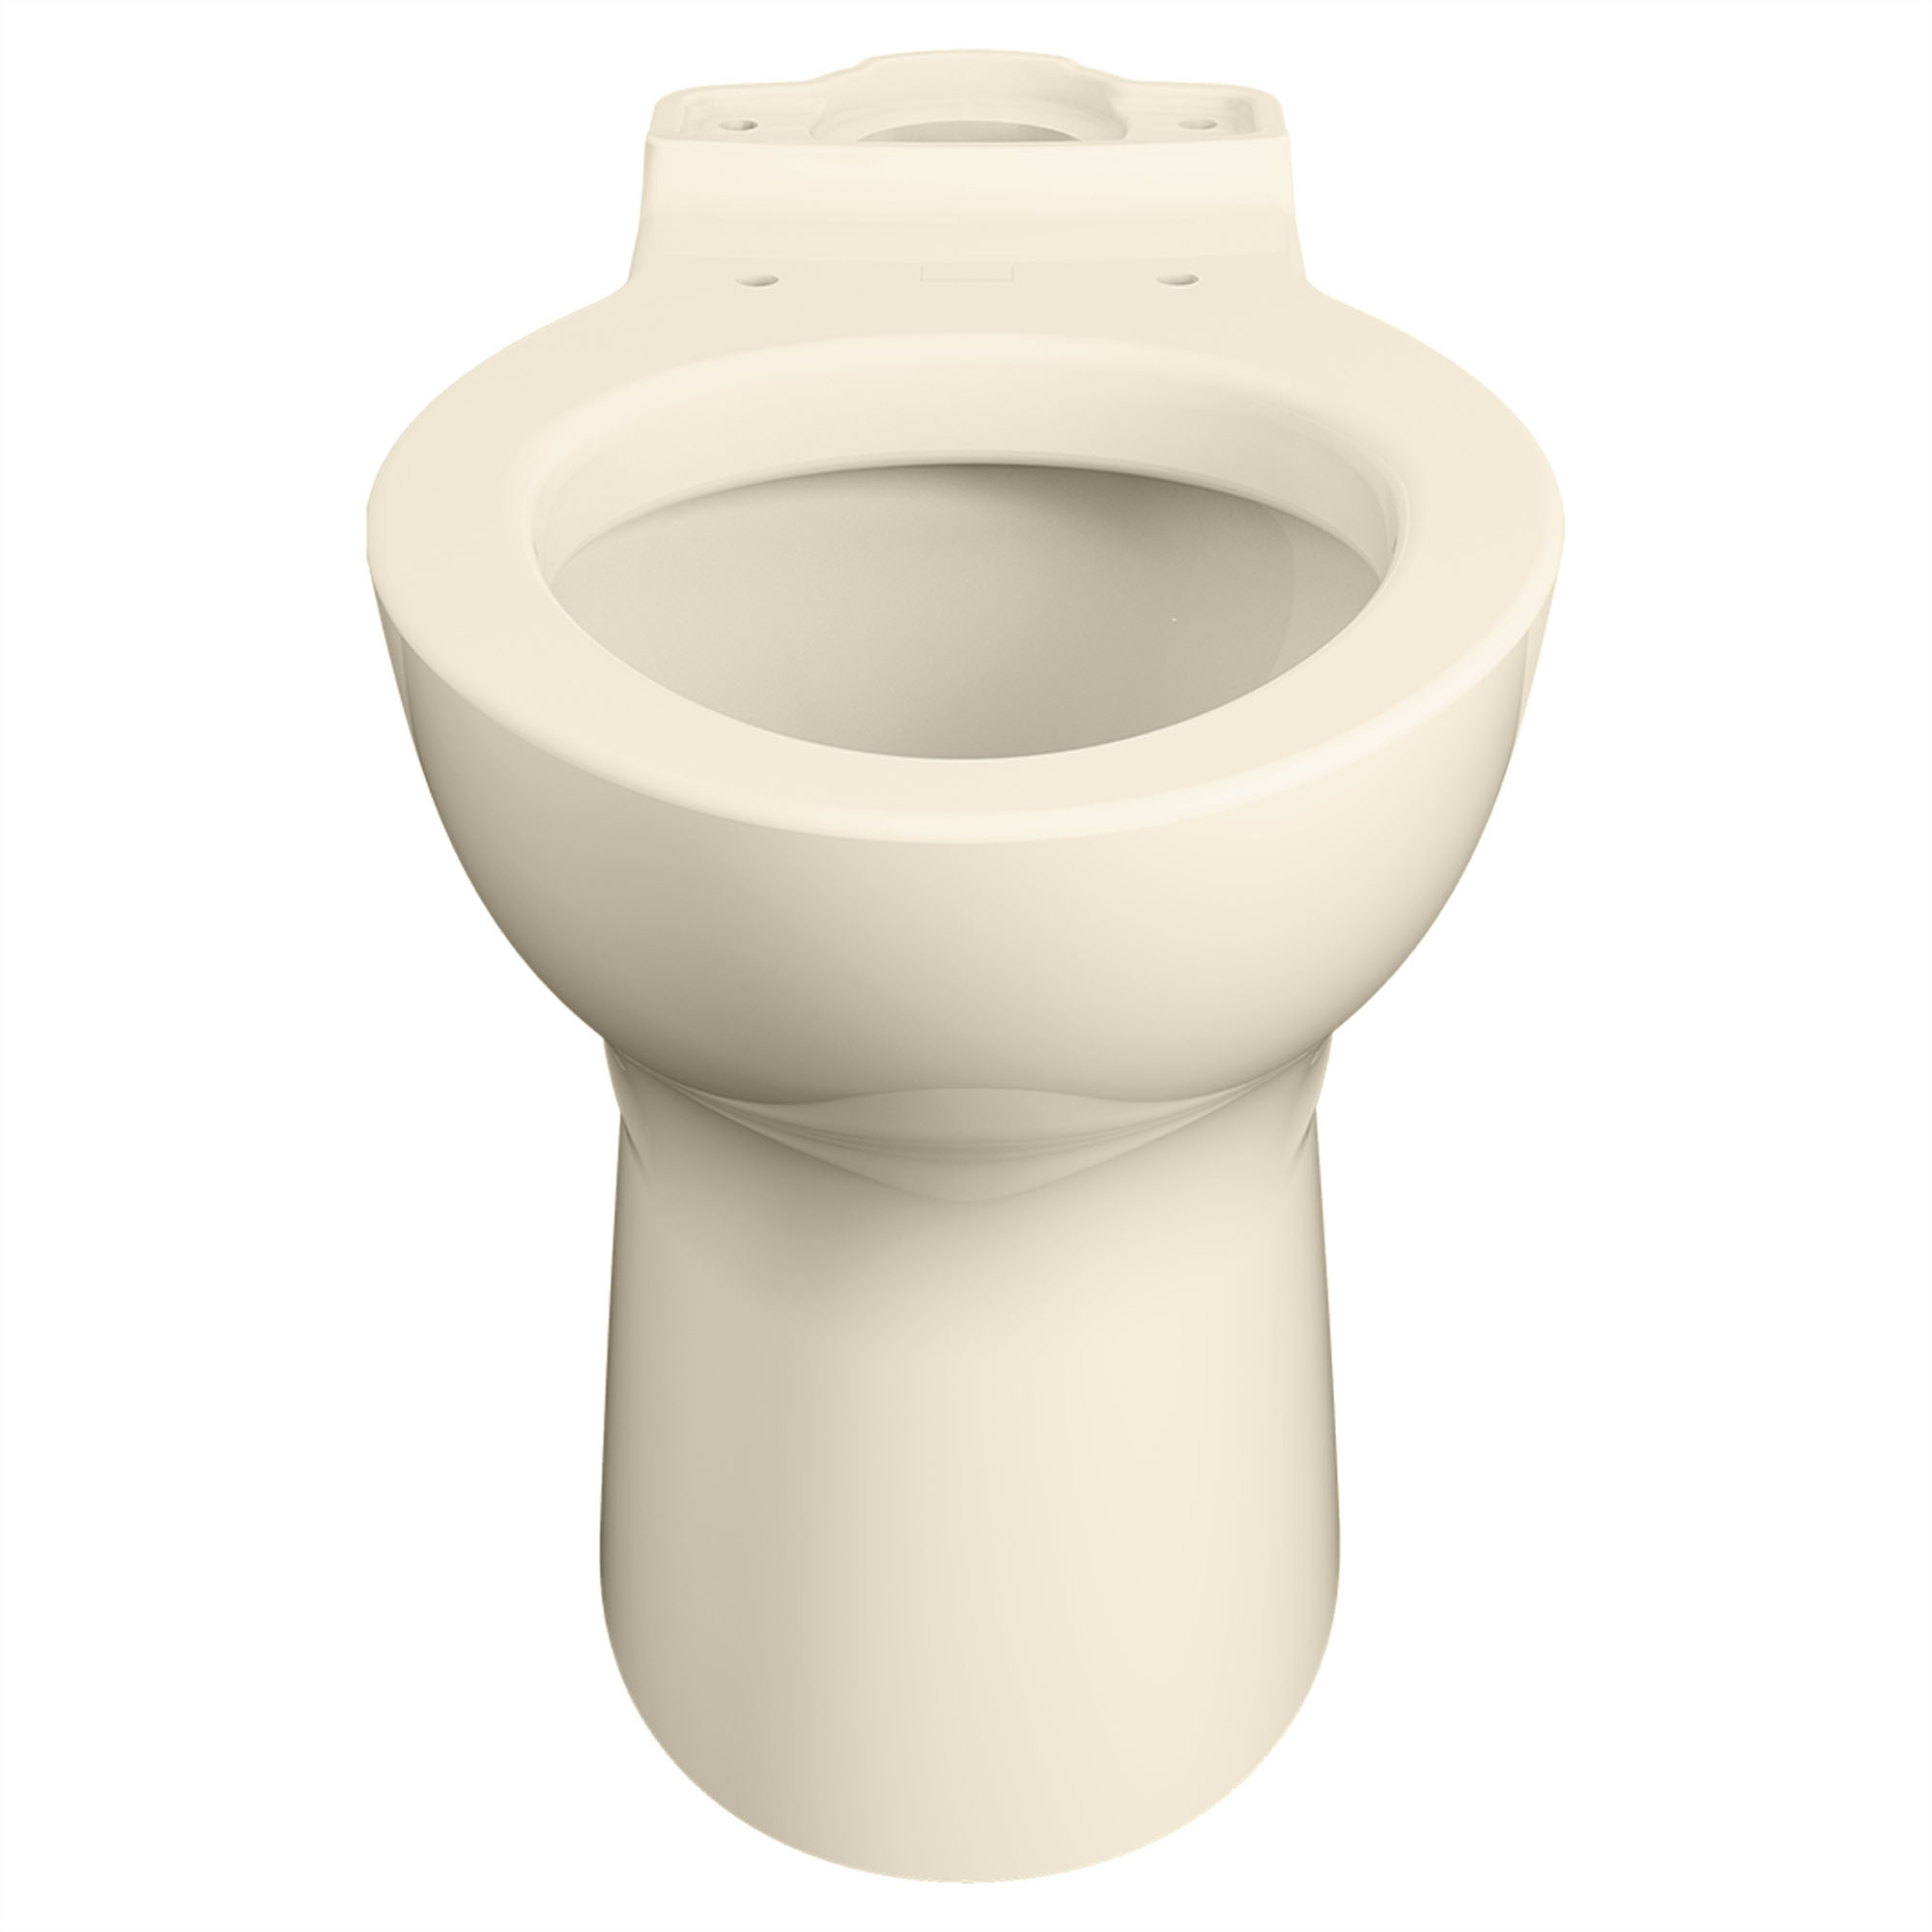 Toilette Cadet PRO, à cuvette allongée à hauteur régulière, sans siège